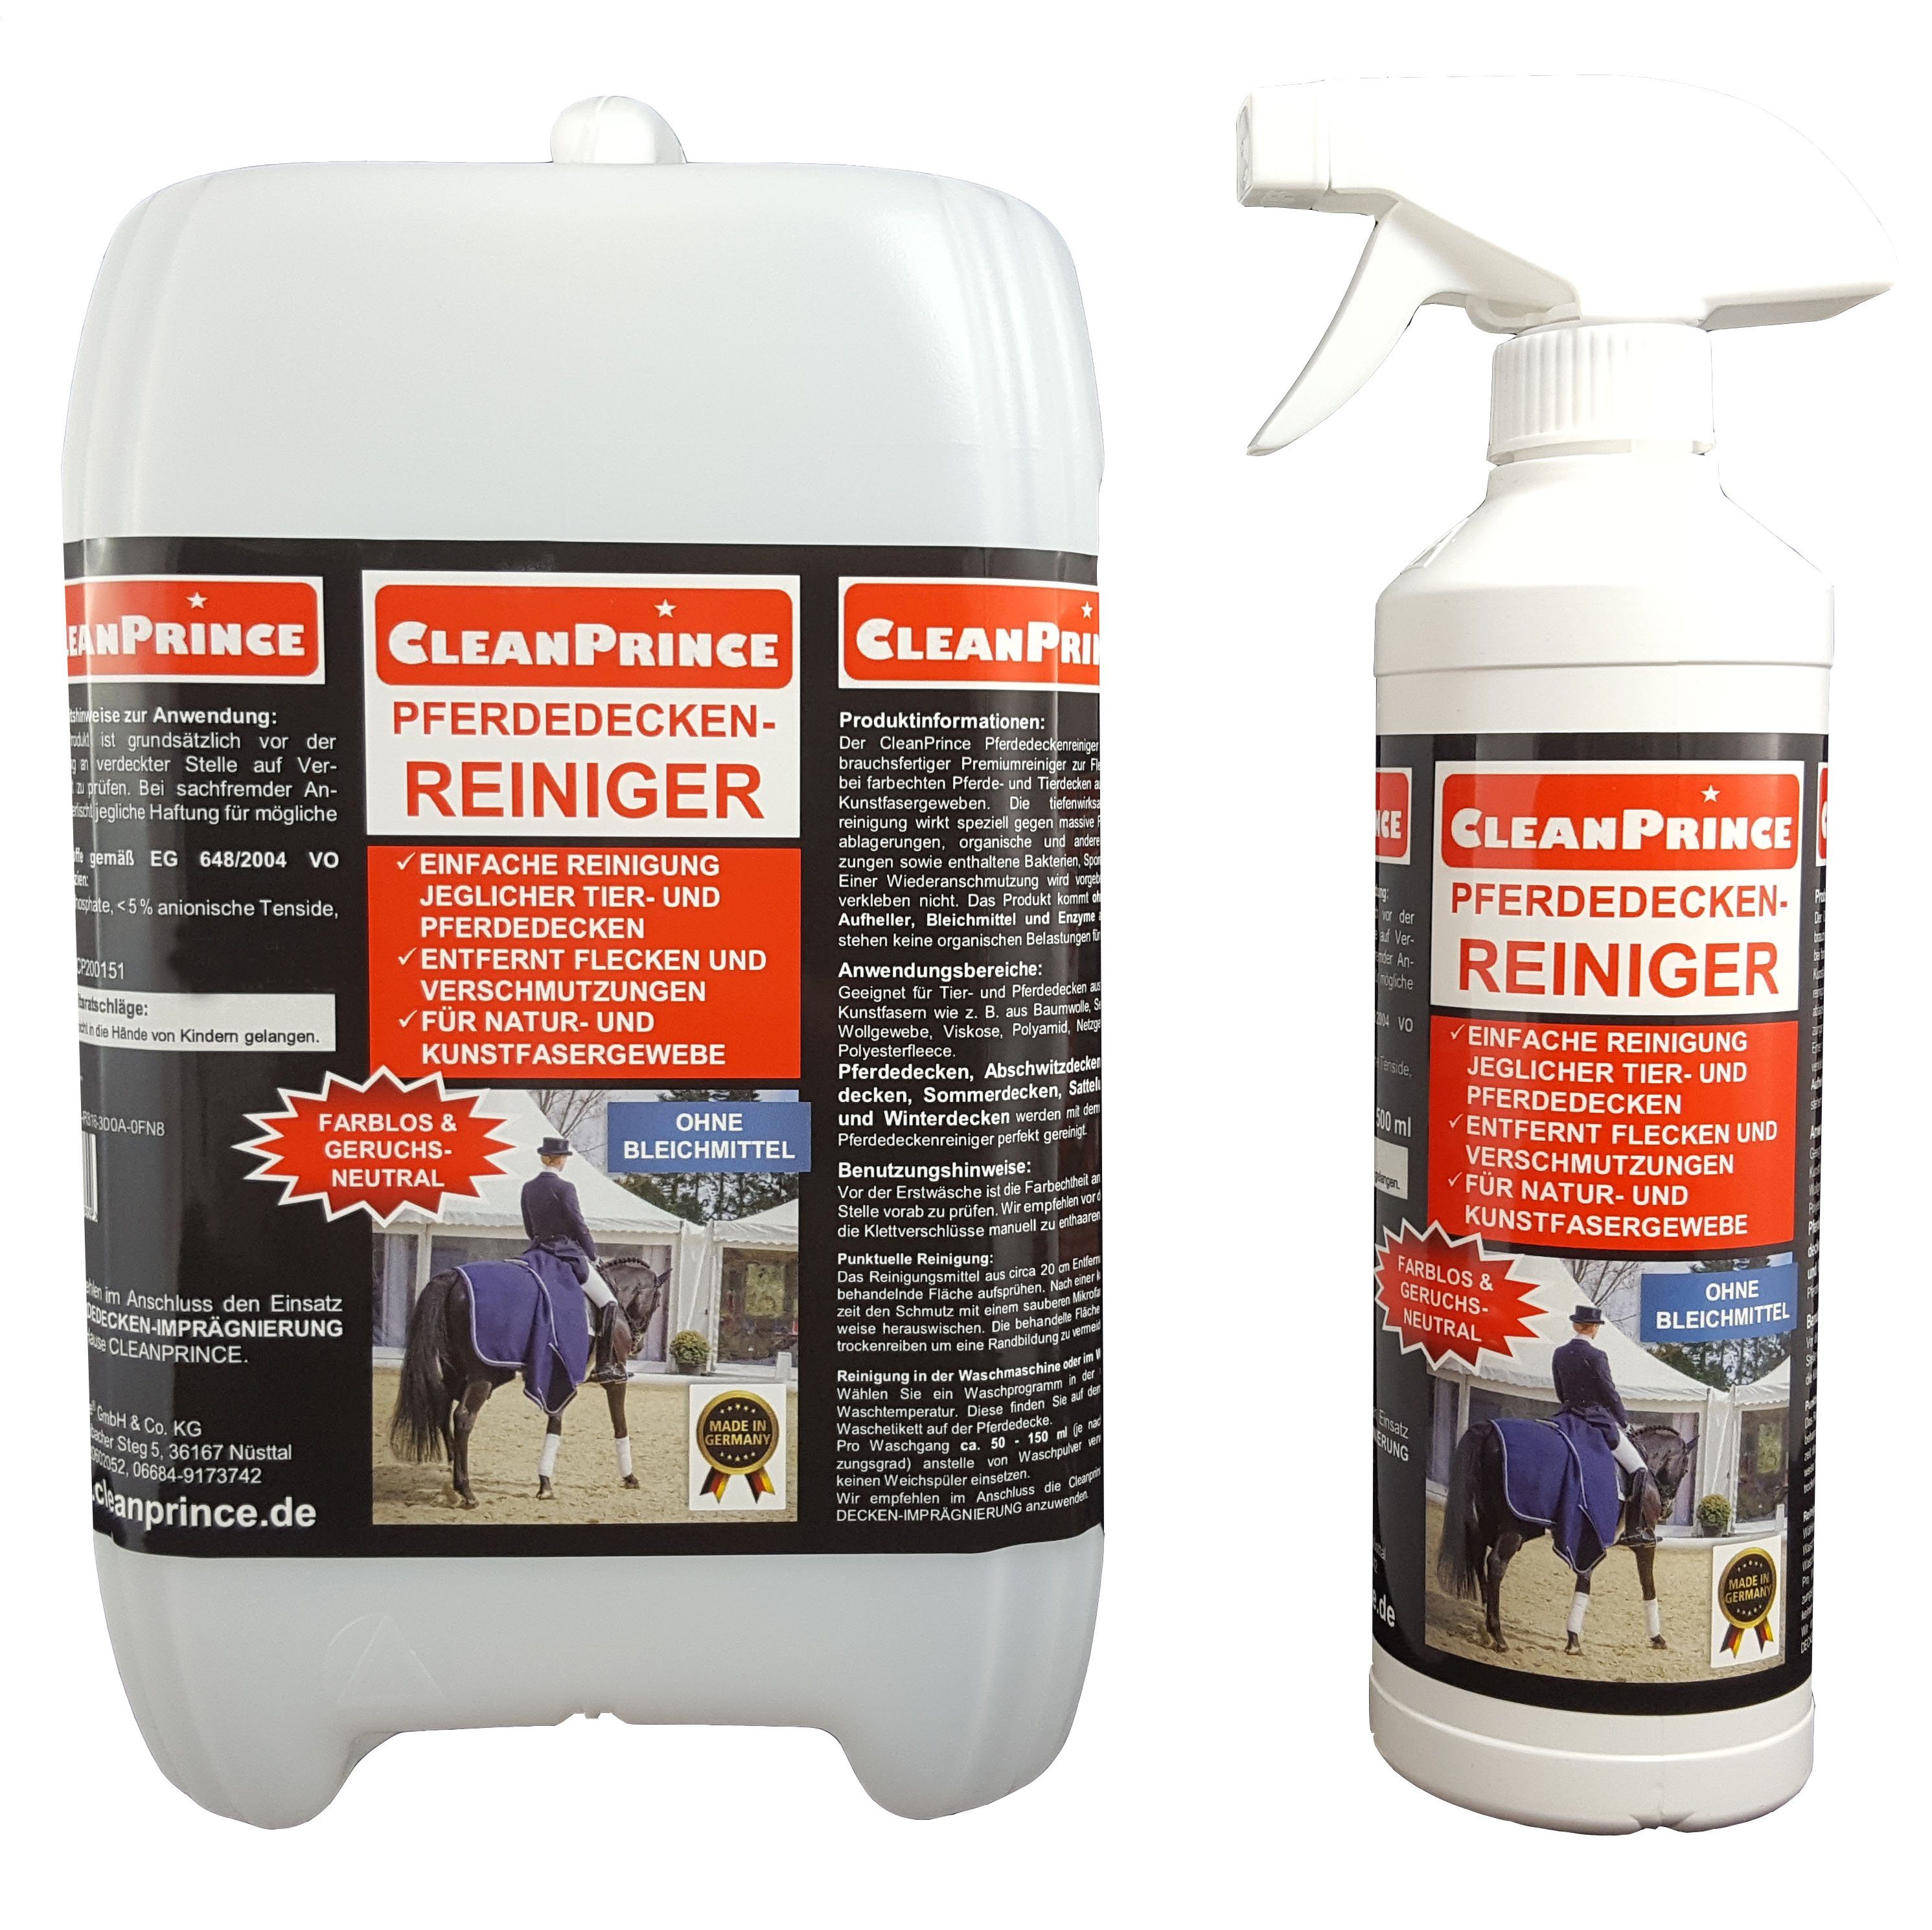 CleanPrince Pferdedecken-Reiniger Reinigungsmittel Tierdecken Pferdedecken Spezialwaschmittel (ohne Bleichmittel, geruchsneutral und unschädlich für die Tiere)